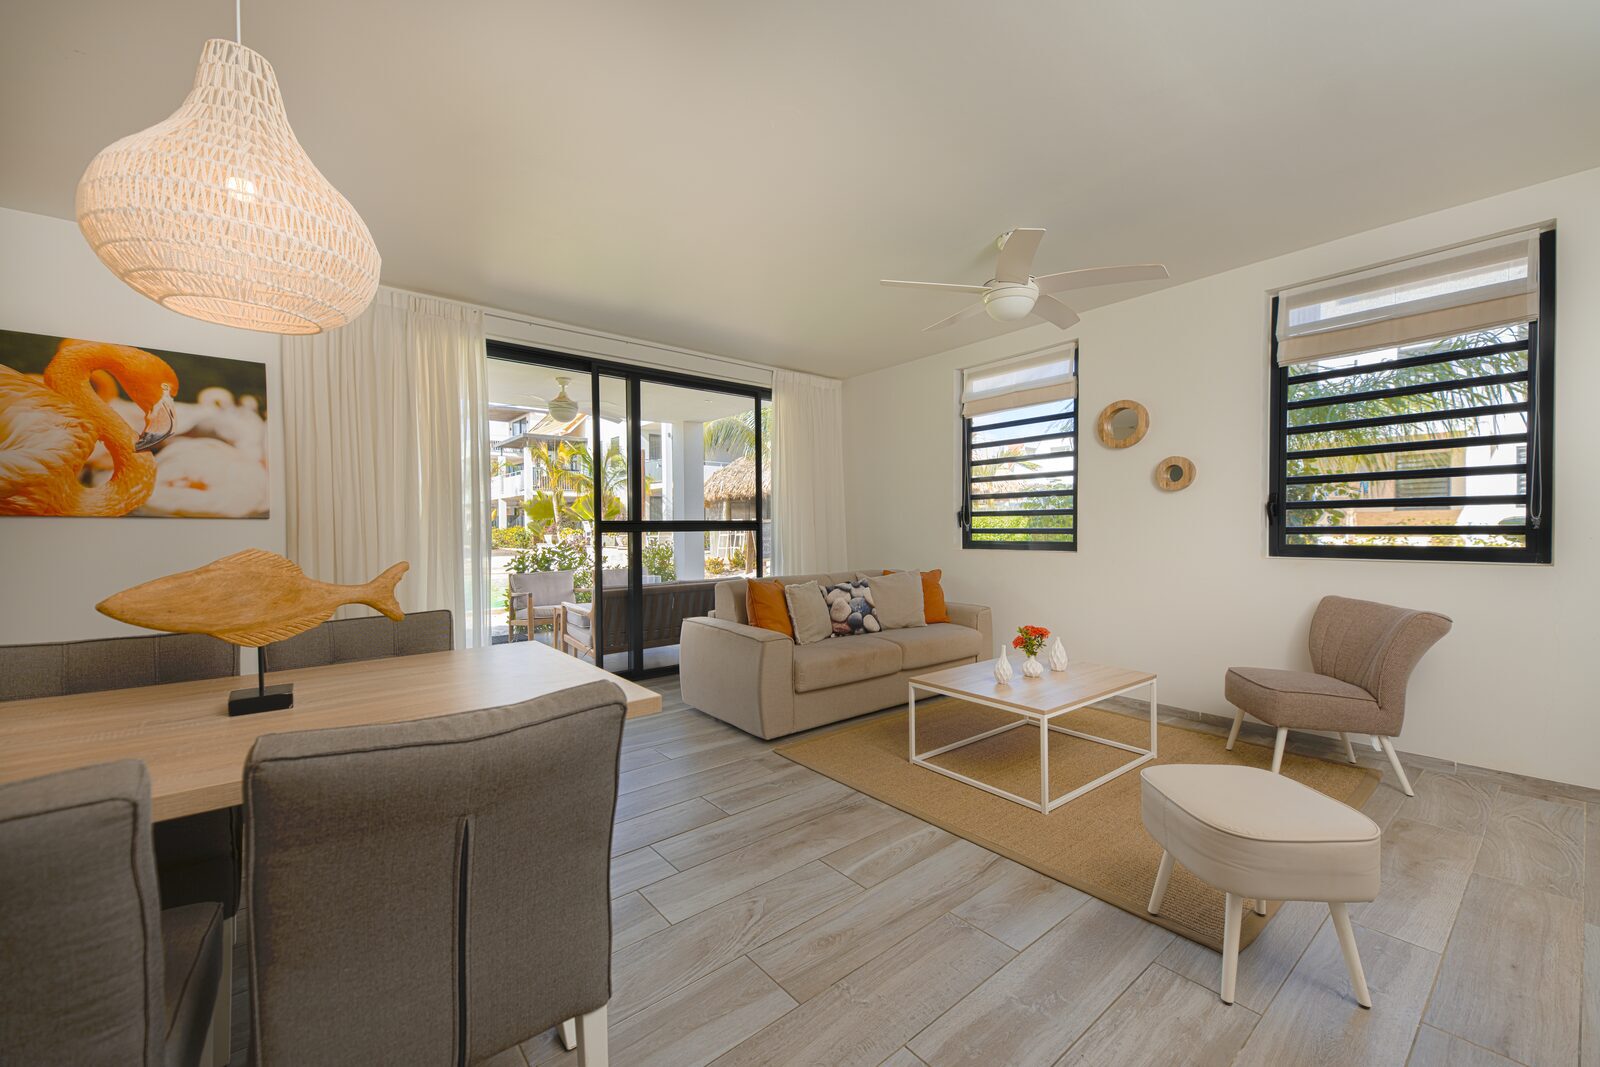 Procura um apartamento em Bonaire? Veja os alojamentos disponíveis no nosso resort aqui.